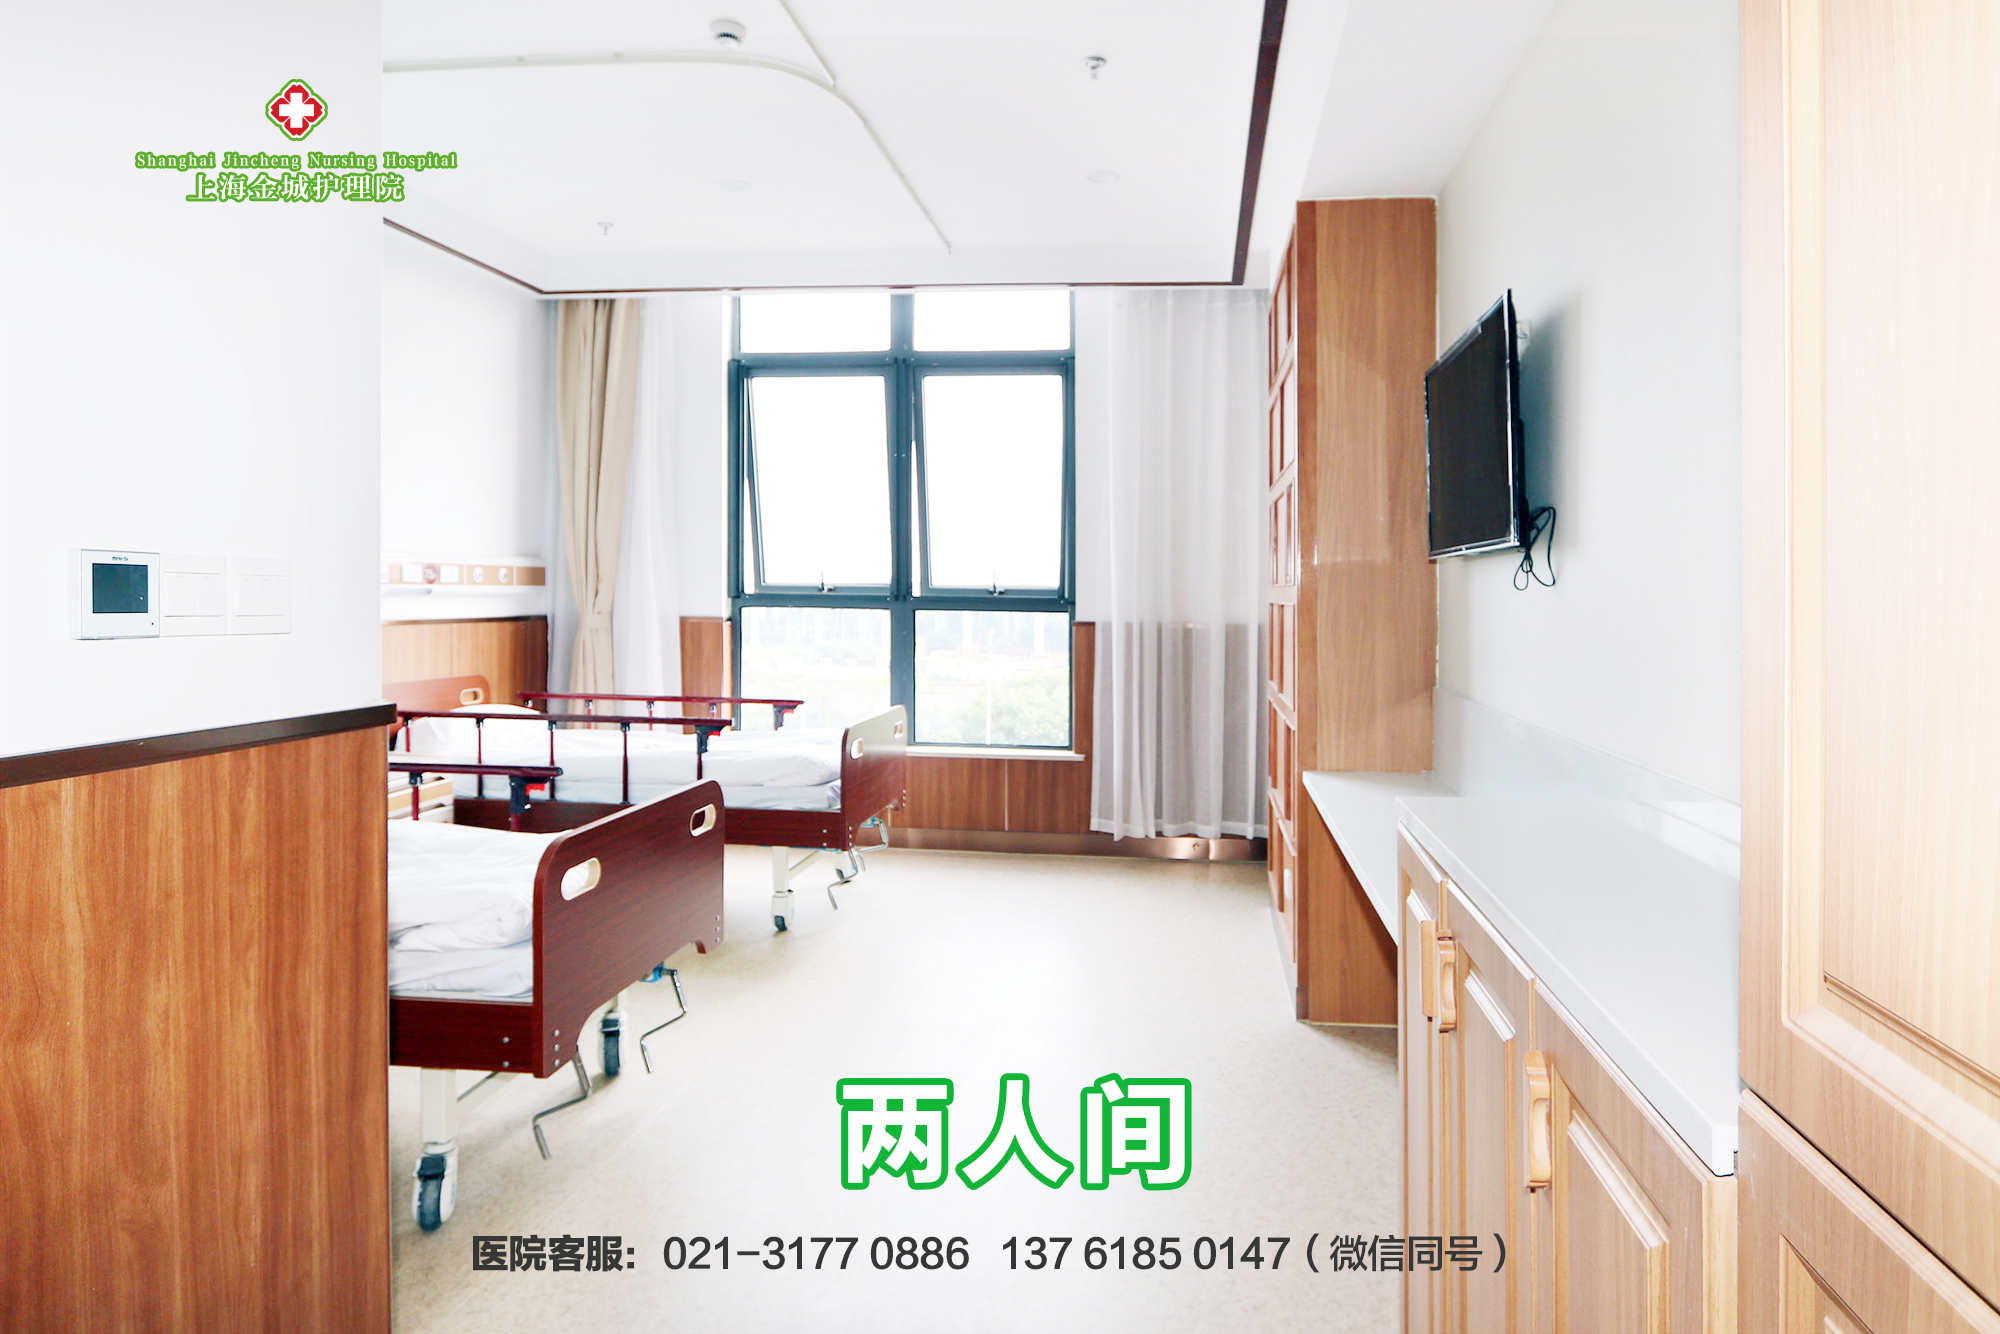 上海金城护理院677